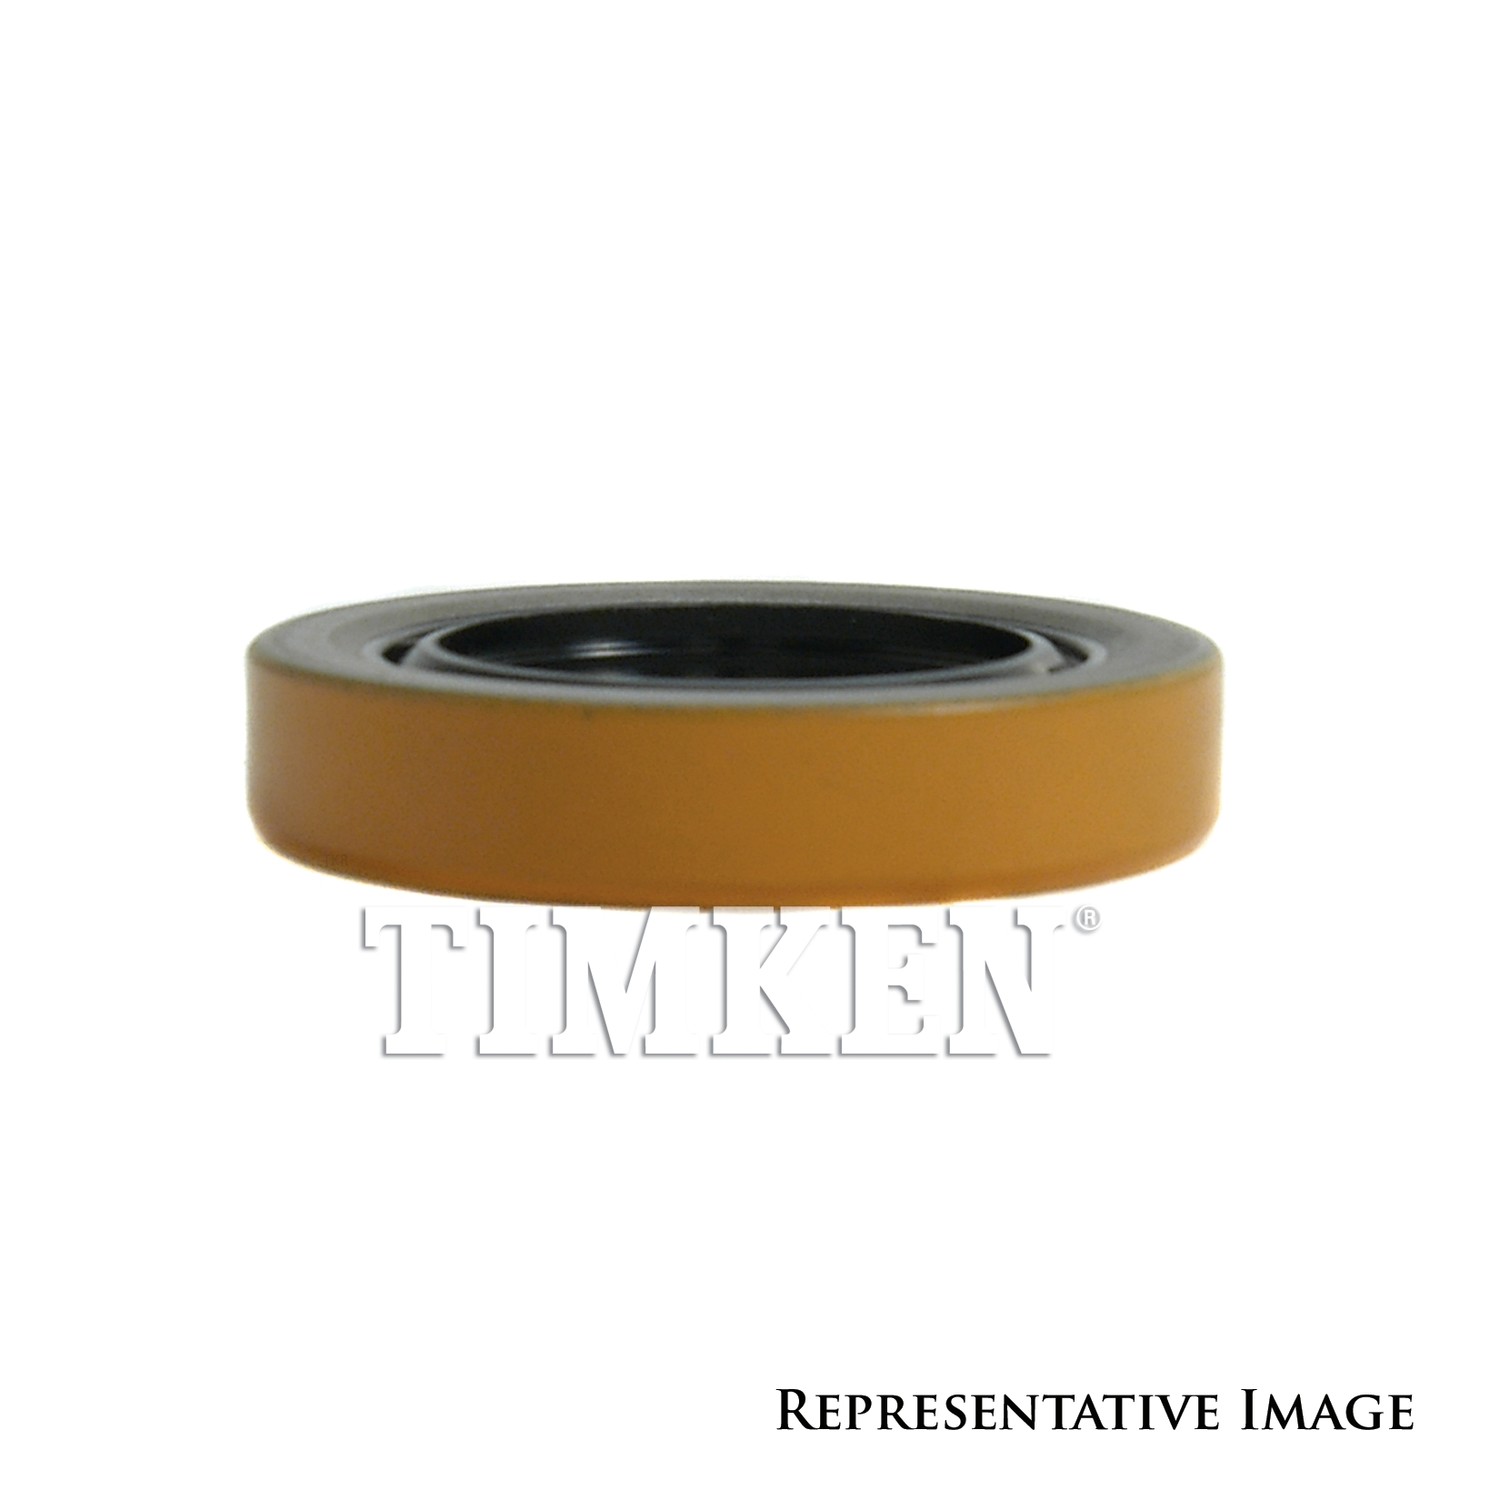 TIMKEN - Manual Trans Input Shaft Seal (Front) - TIM 3732S